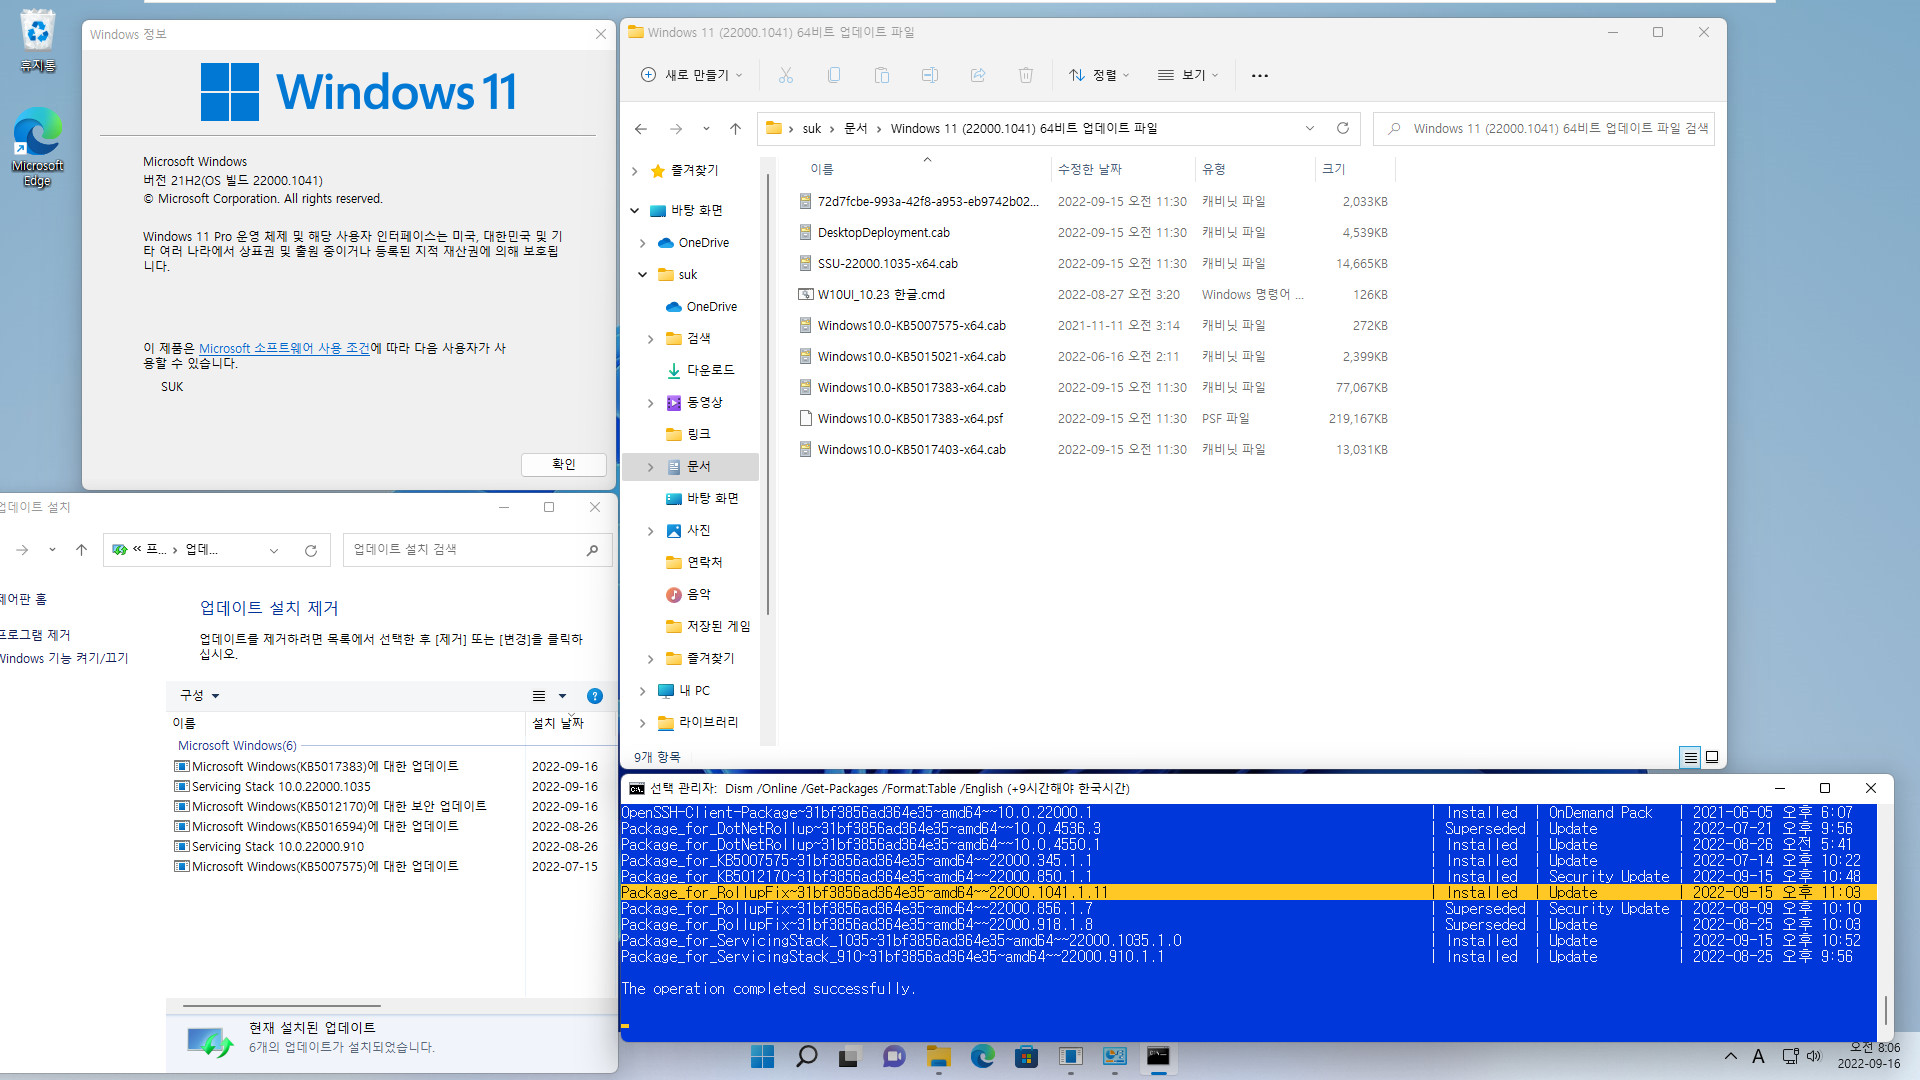 2022-09-16 금요일 - 릴리스 프리뷰 채널 - Windows 11 버전 21H2, 빌드 22000.1041 - 누적 업데이트 KB5017383 - vmware에 설치 테스트 - KB5012170 = 보안 업데이트 DBX 2022-09-16_080655.jpg